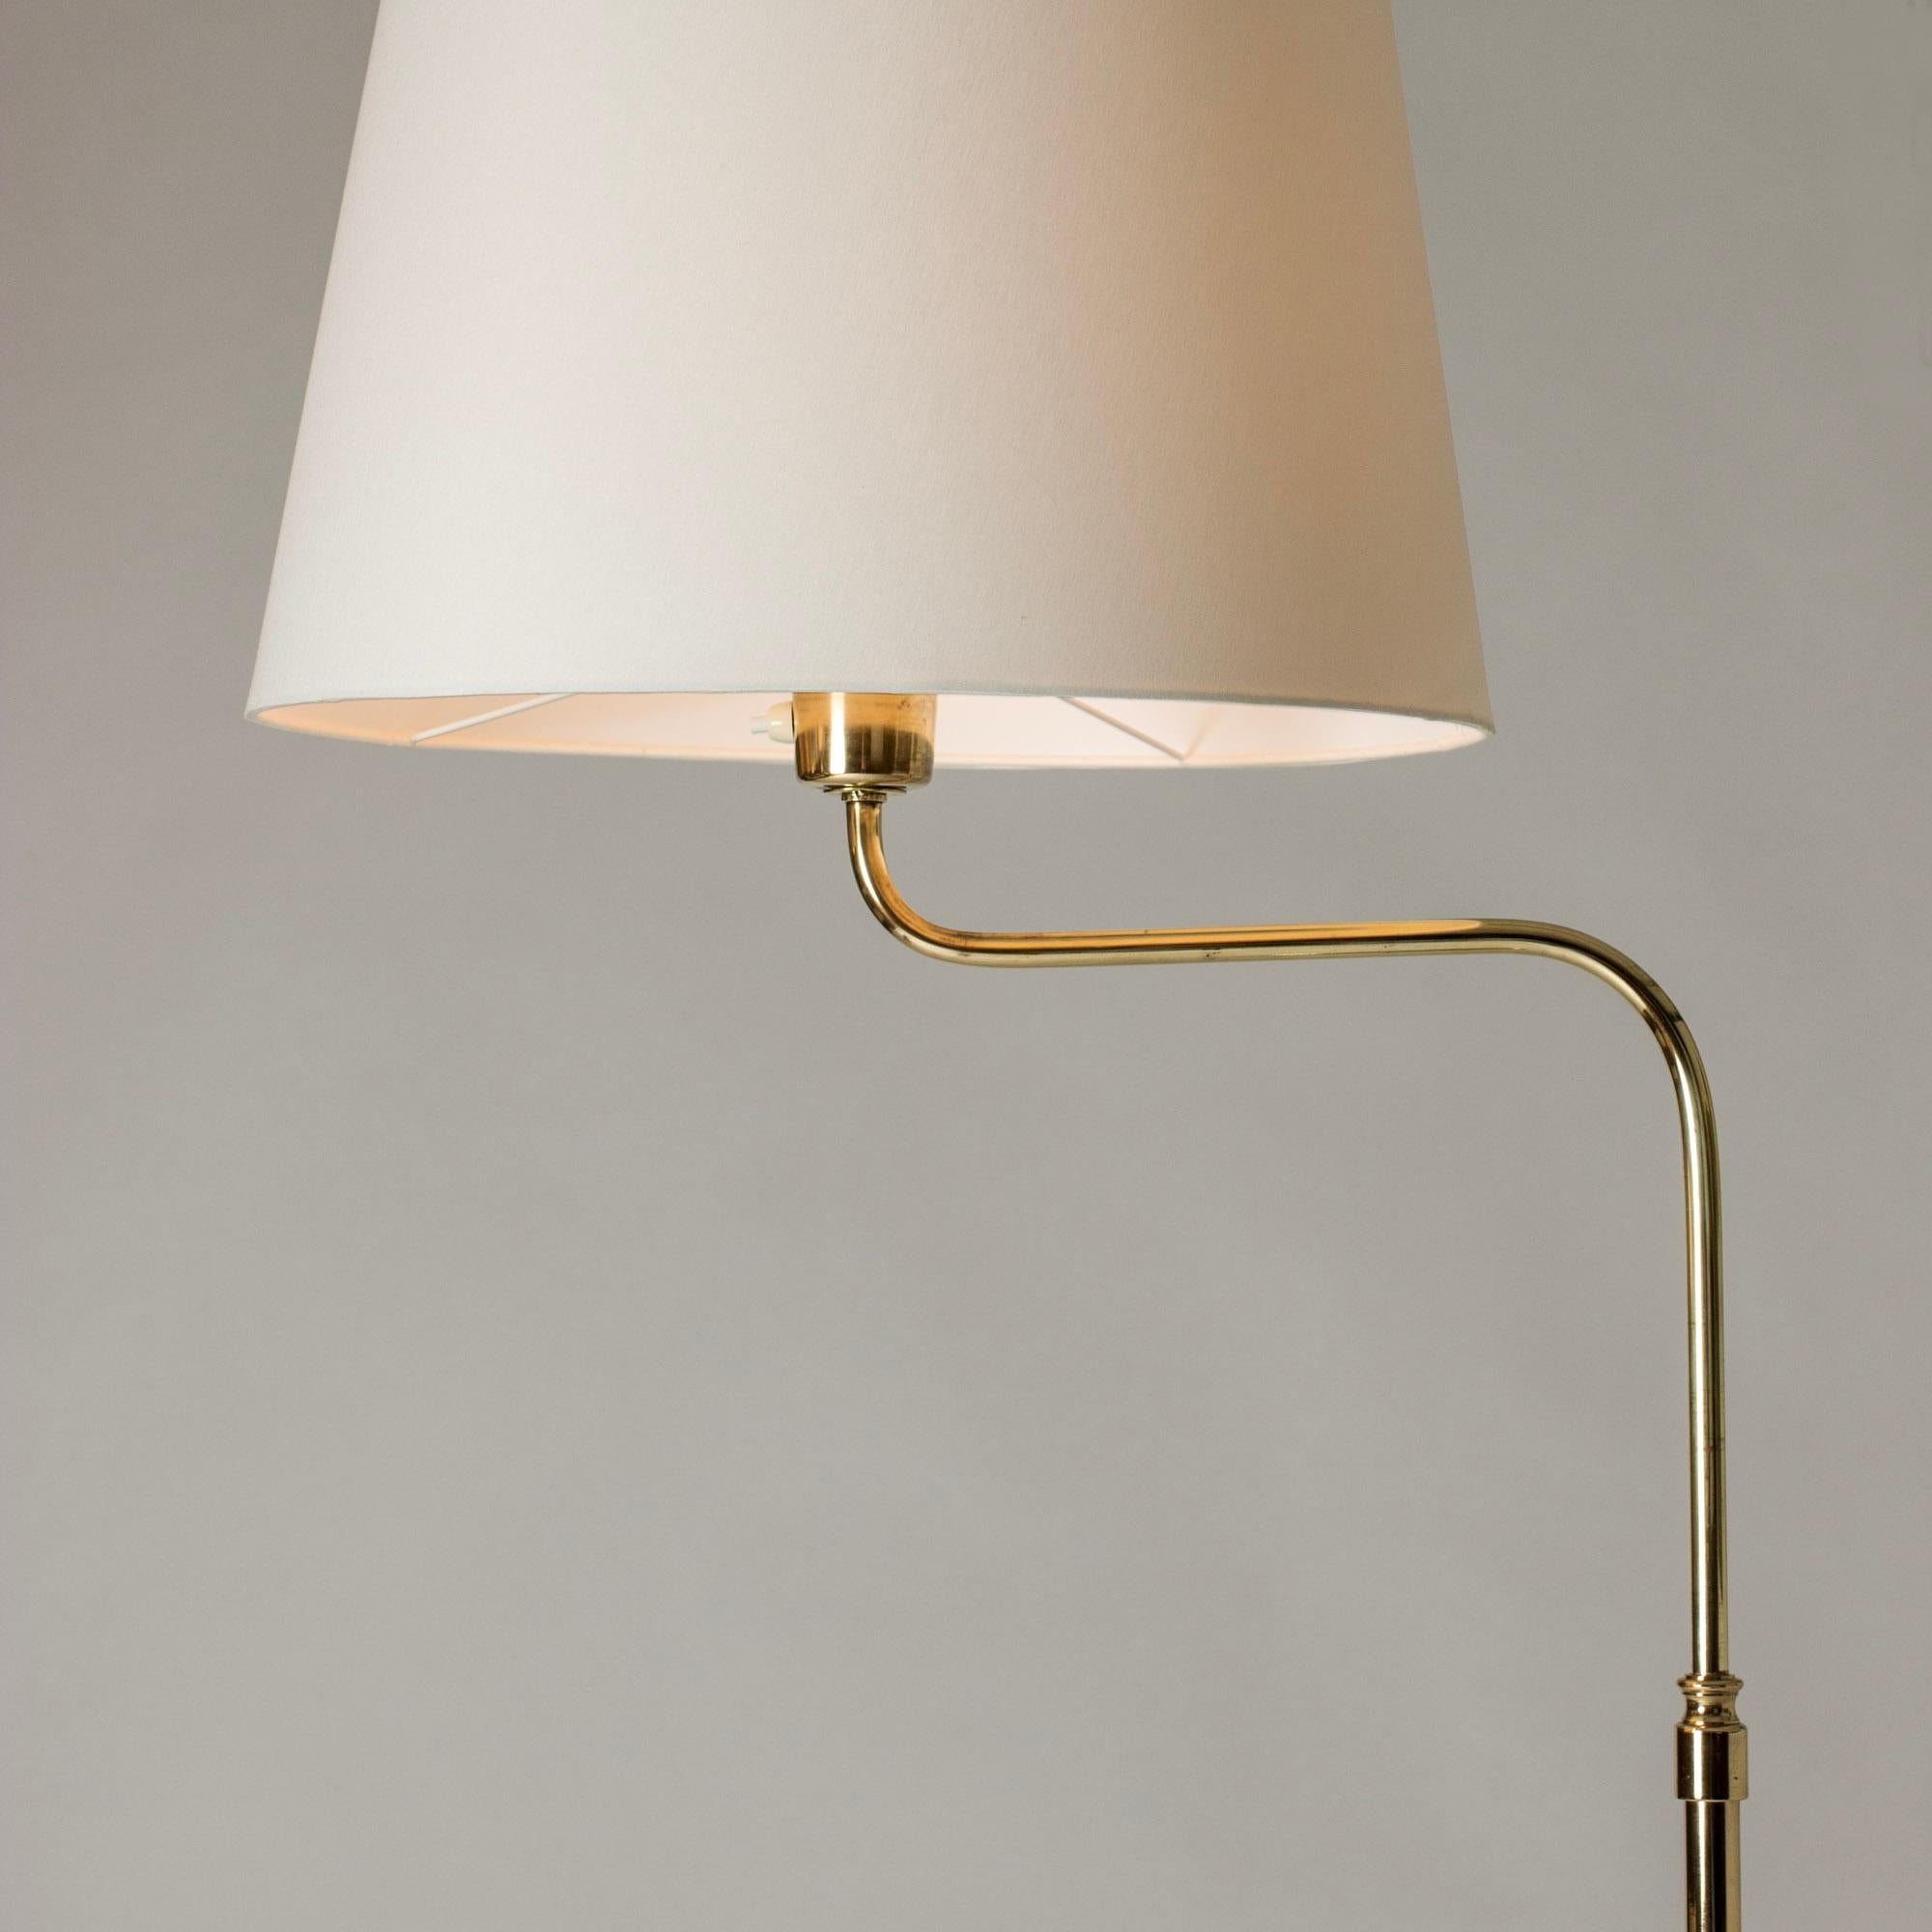 Scandinavian Midcentury Brass Floor Lamp from Nk, Sweden, 1950s For Sale 1